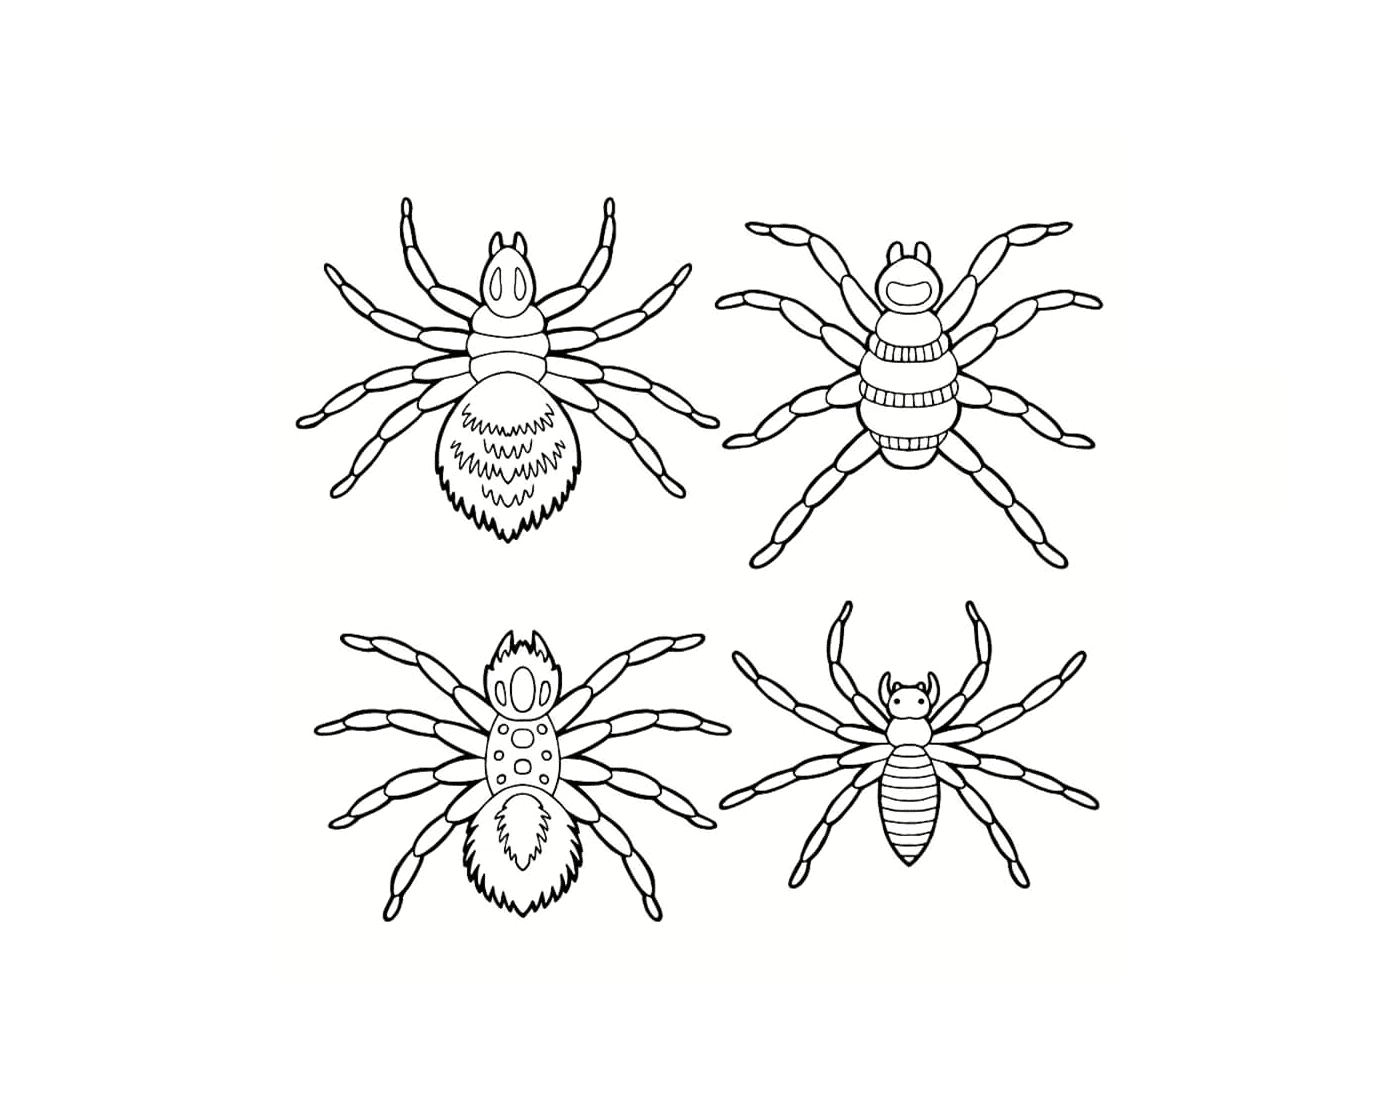  Eine Reihe von verschiedenen Spinnen 